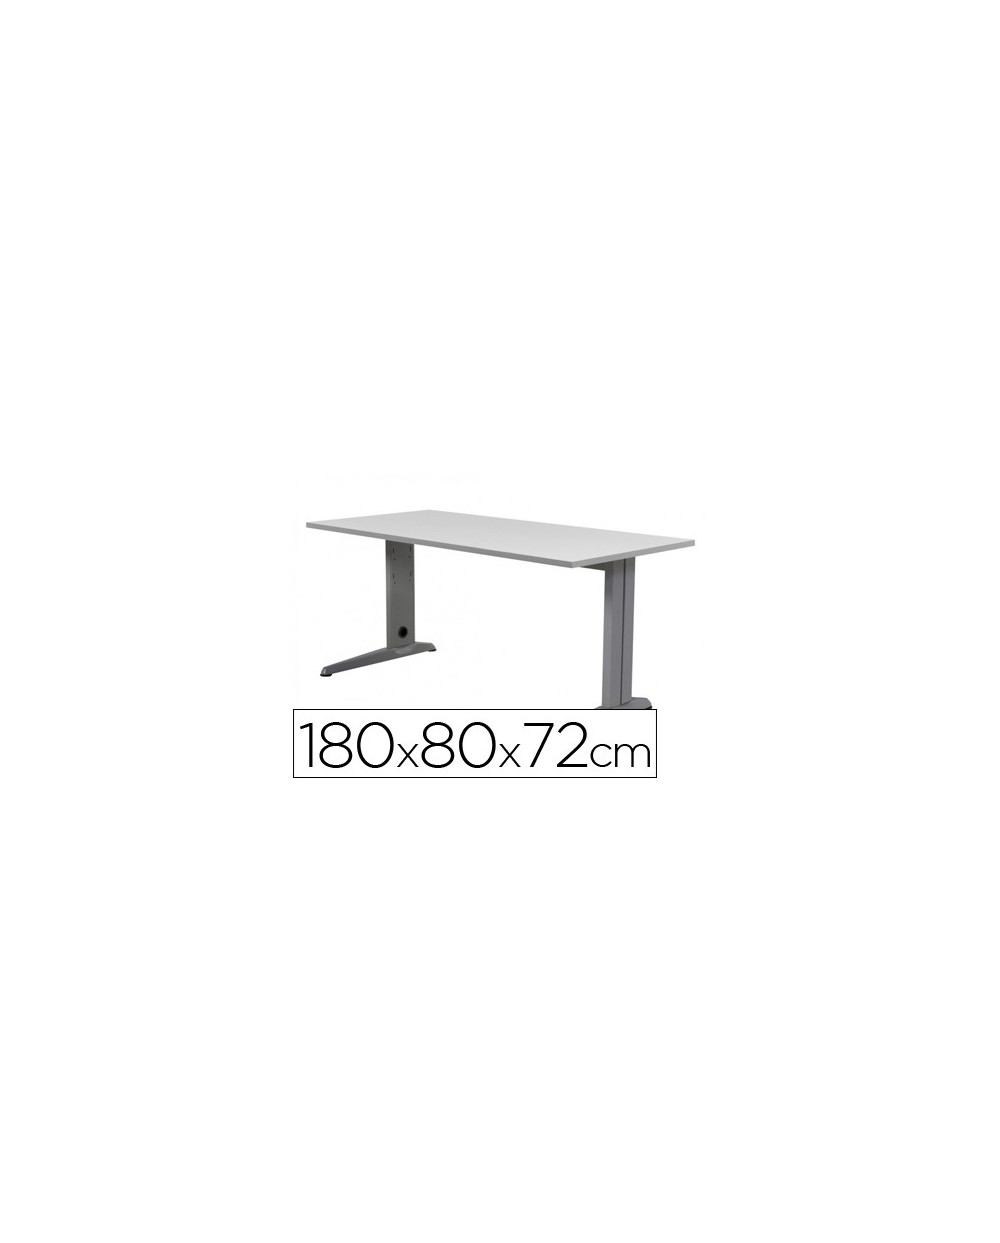 Mesa de oficina rocada metal 2003ac02 aluminio gris 180x80 cm